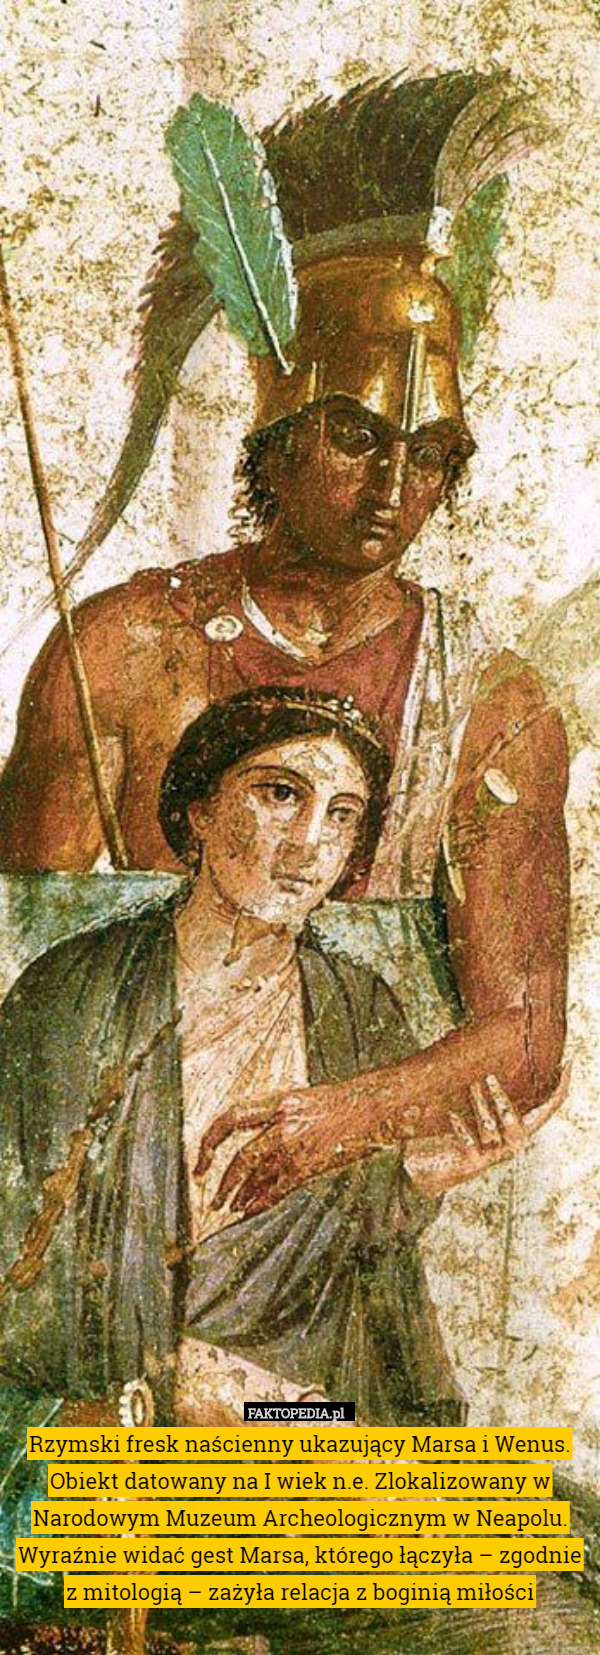 Rzymski fresk naścienny ukazujący Marsa i Wenus. Obiekt datowany na I wiek n.e. Zlokalizowany w Narodowym Muzeum Archeologicznym w Neapolu.
Wyraźnie widać gest Marsa, którego łączyła – zgodnie z mitologią – zażyła relacja z boginią miłości 